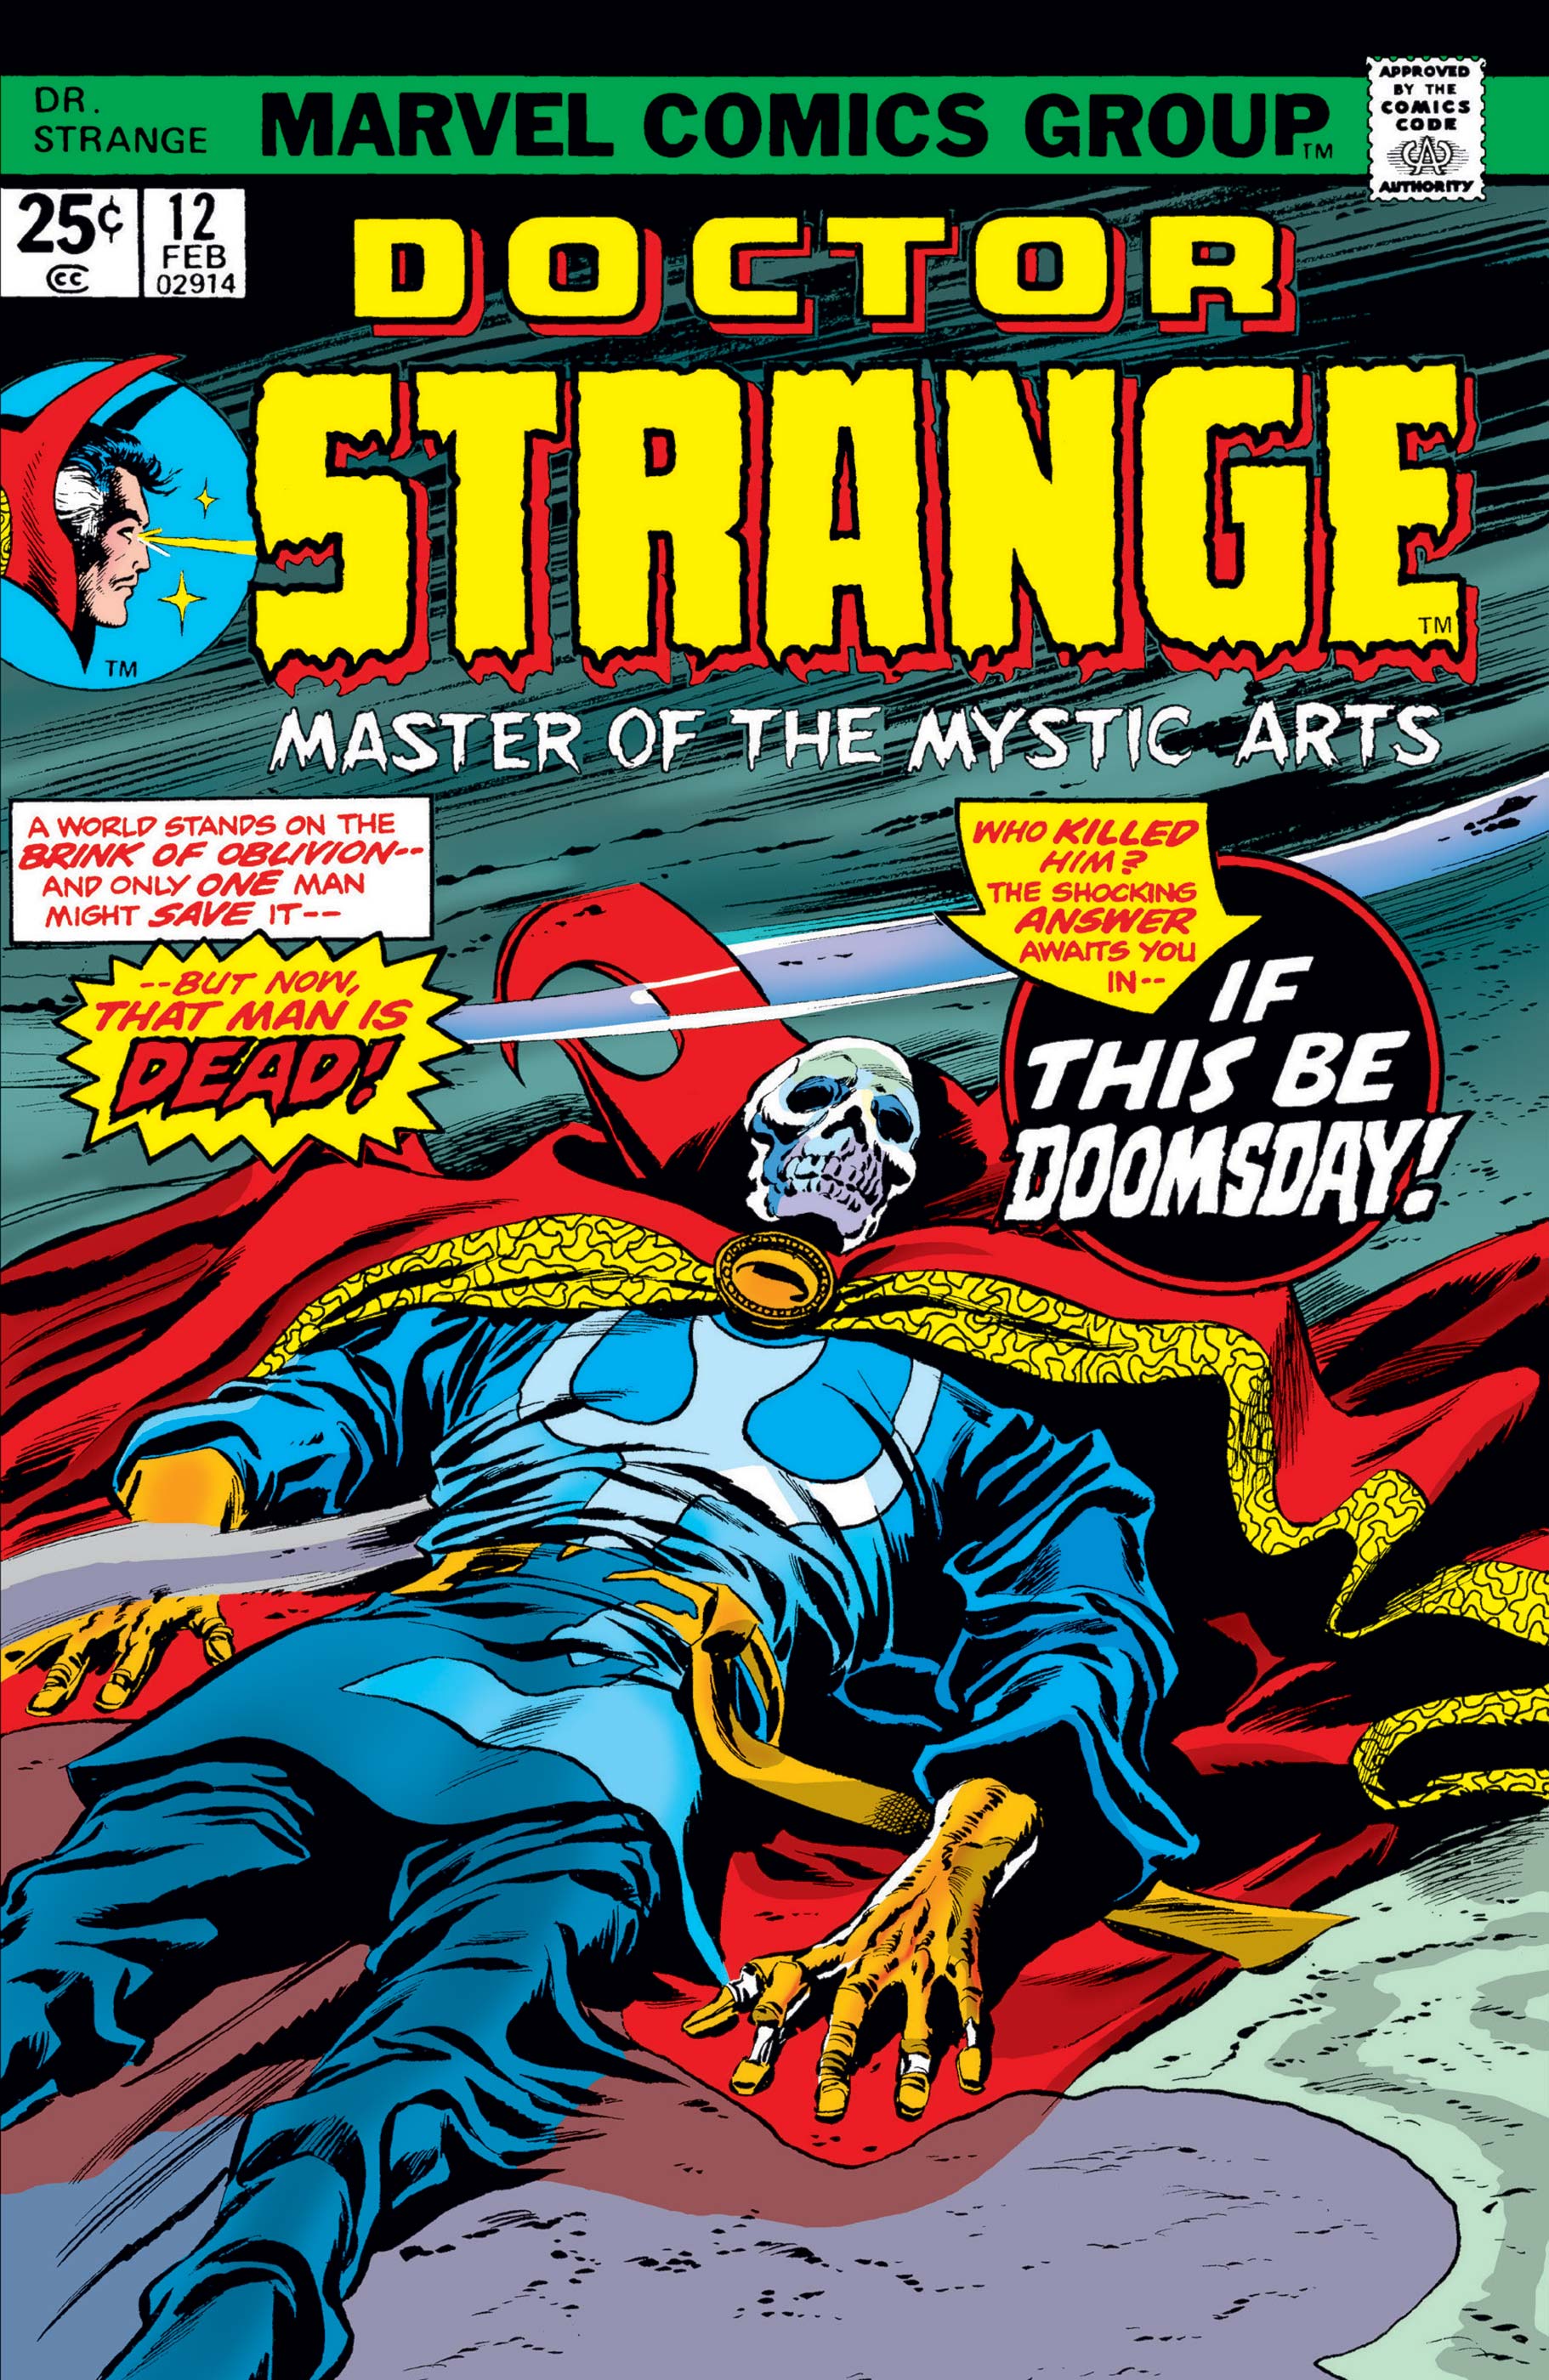 Doctor Strange (1974) #12